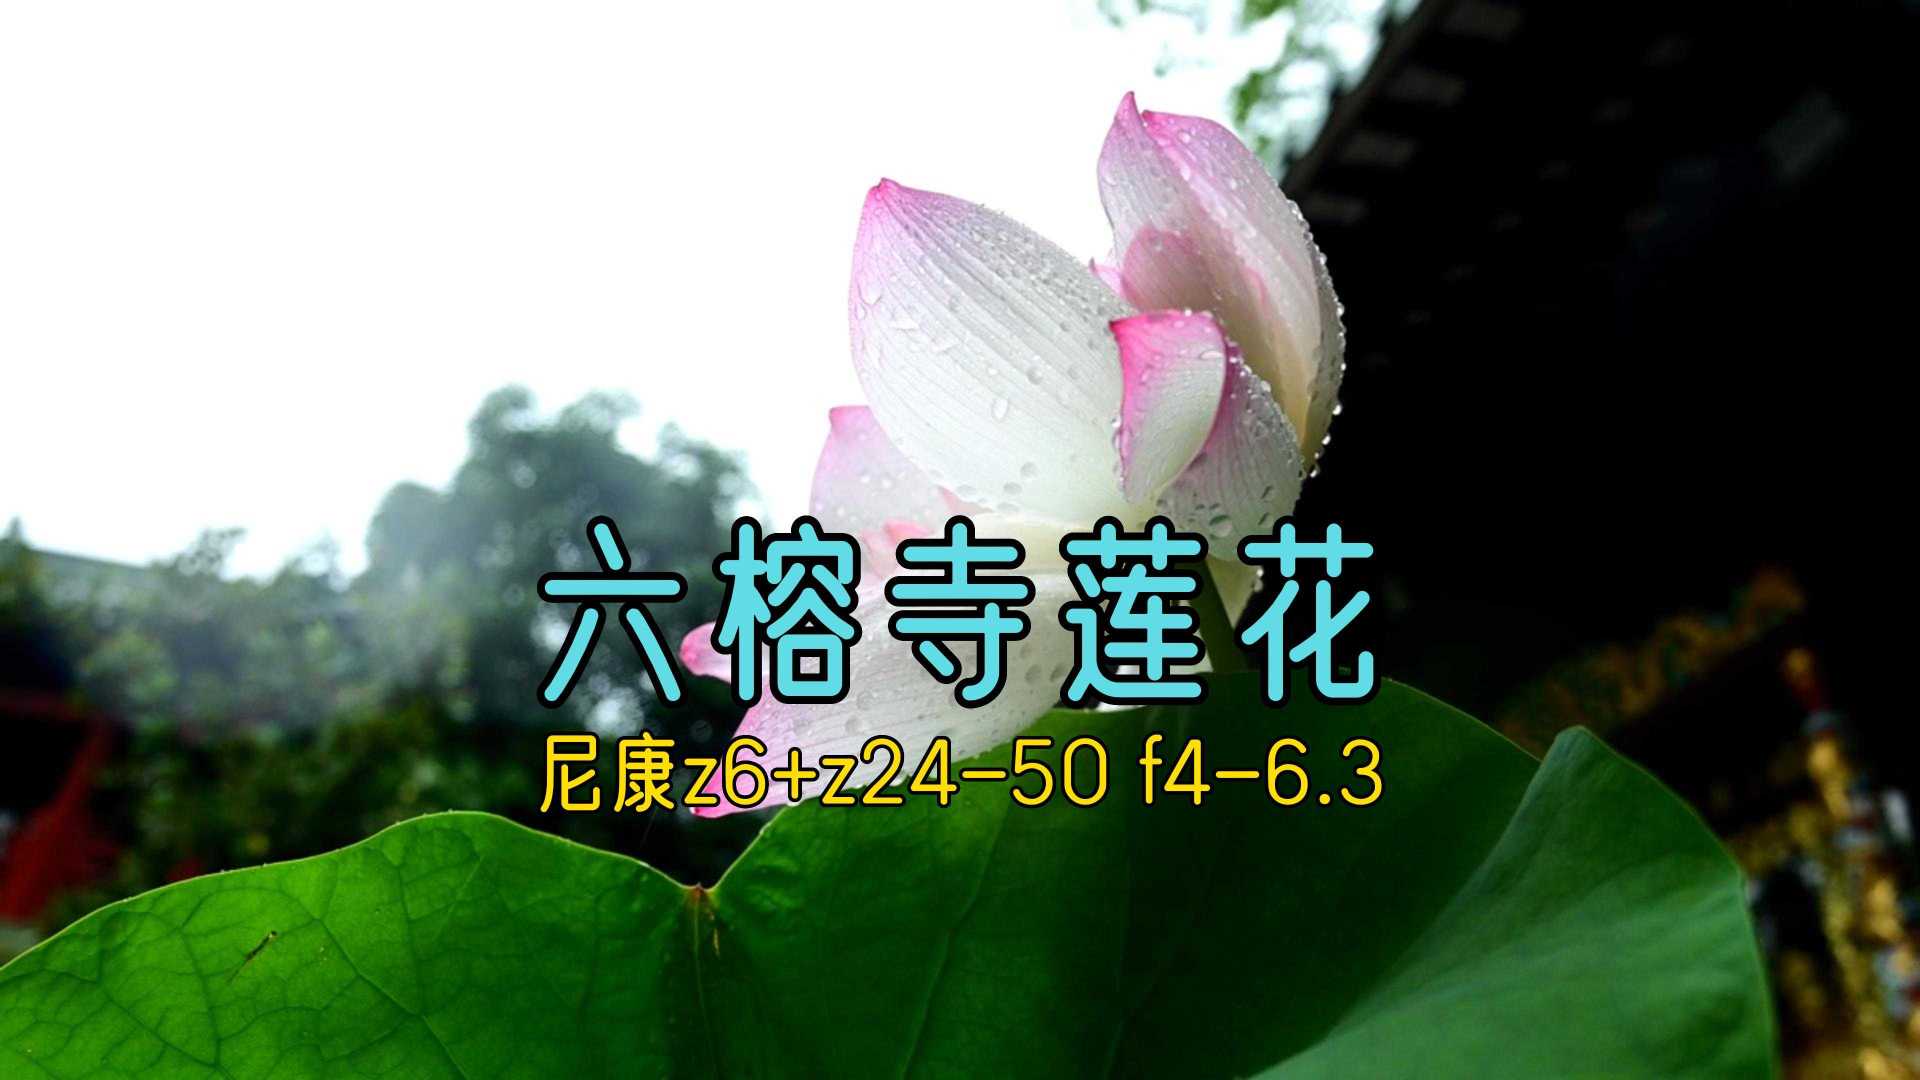 【尼康z6+z24-50】广州六榕寺莲花